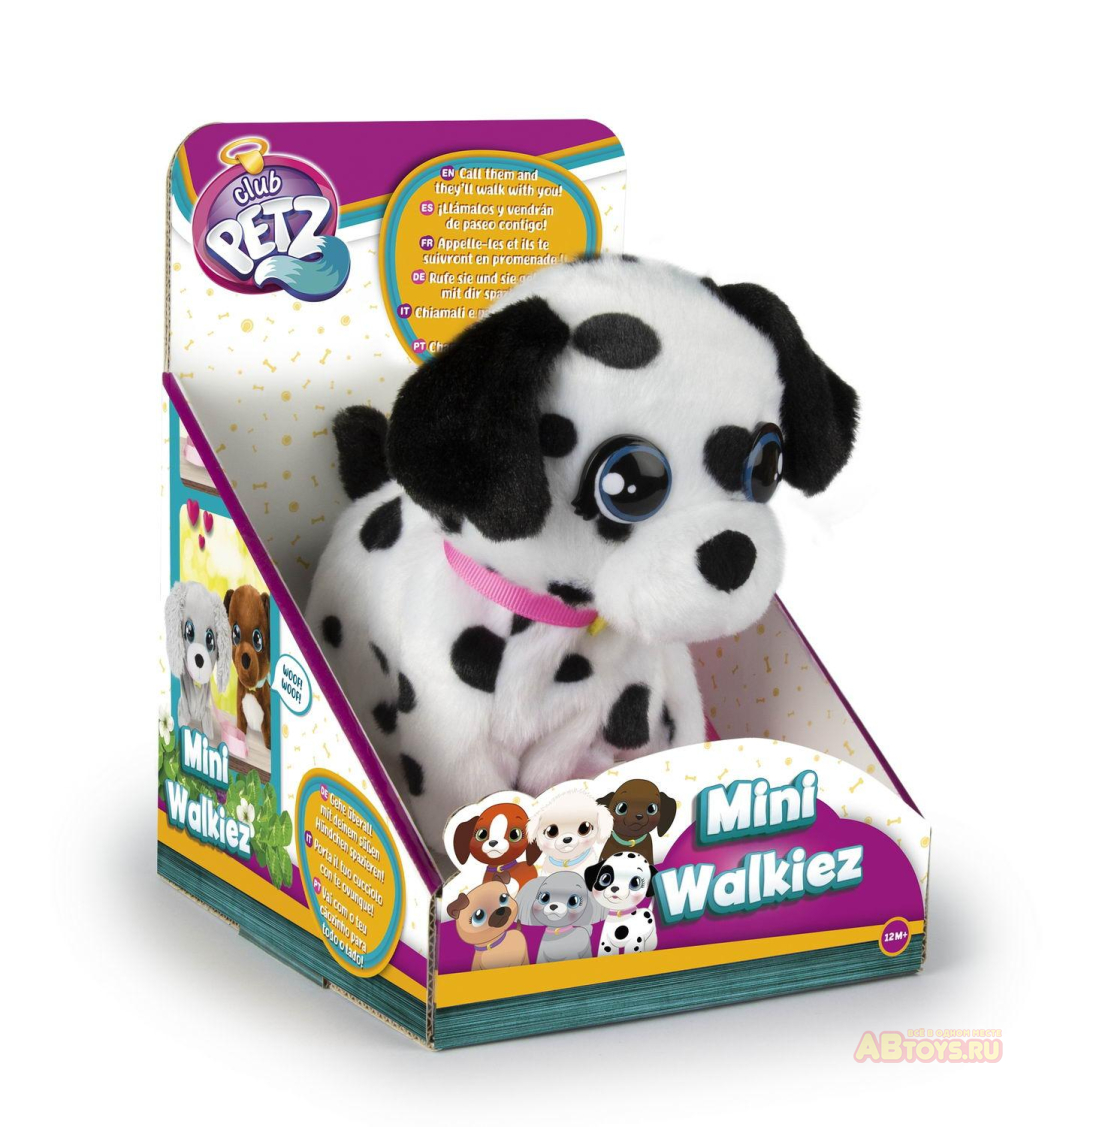 Игрушка интерактивная IMC Toys Club Petz Щенок Mini Walkiez Dalmatian интерактивный, ходячий, со звуковыми эффектами